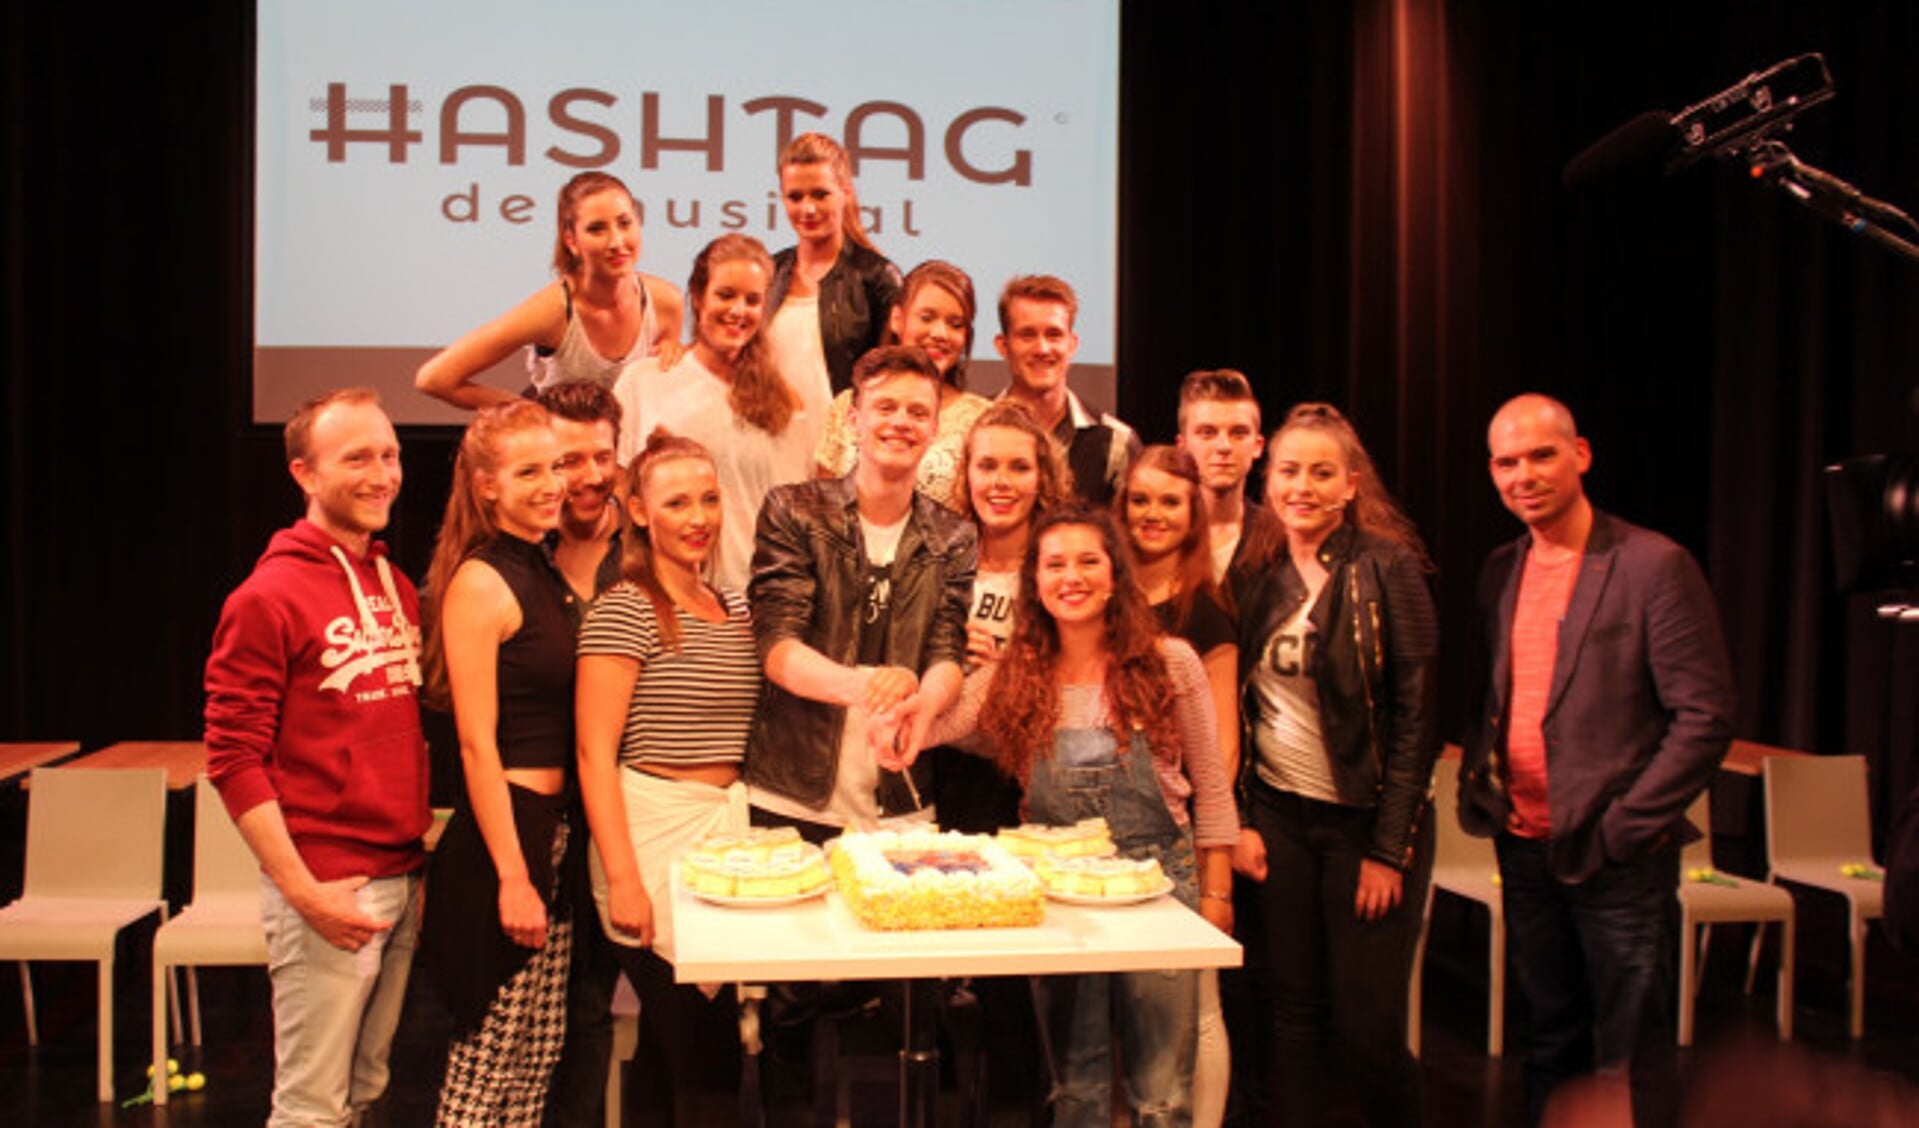 Studenten Song & Dance Academie / Landstede MBO presenteren Hashtag de Musical geregisseerd door William Spaaij